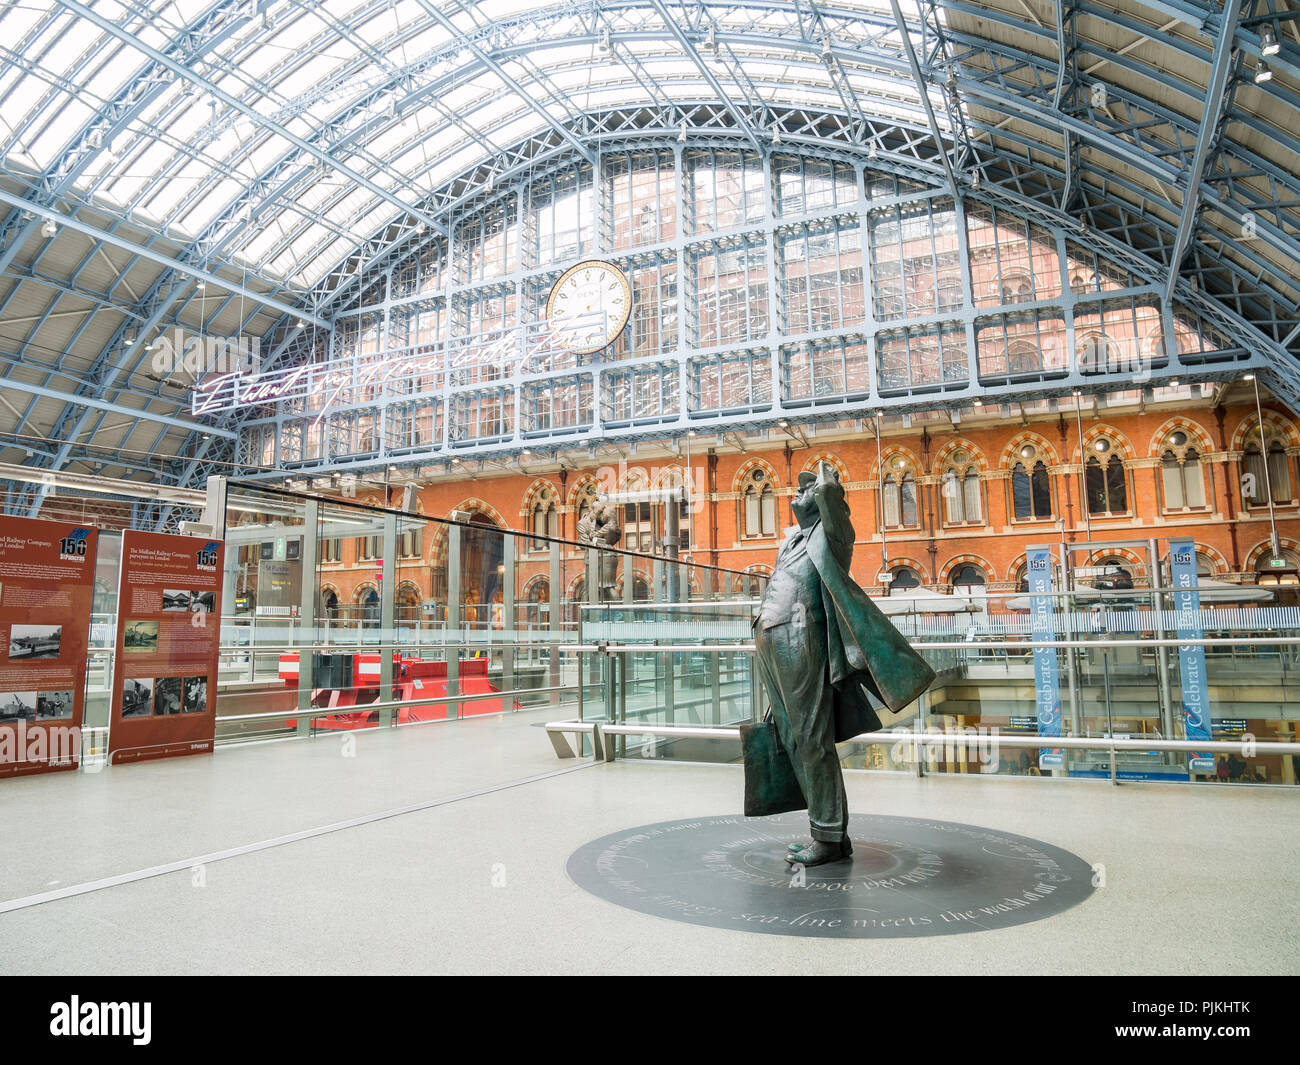 London, APR 24: Die schöne St. Pancras International Station am 24.April 2018 in London, Vereinigtes Königreich Stockfoto